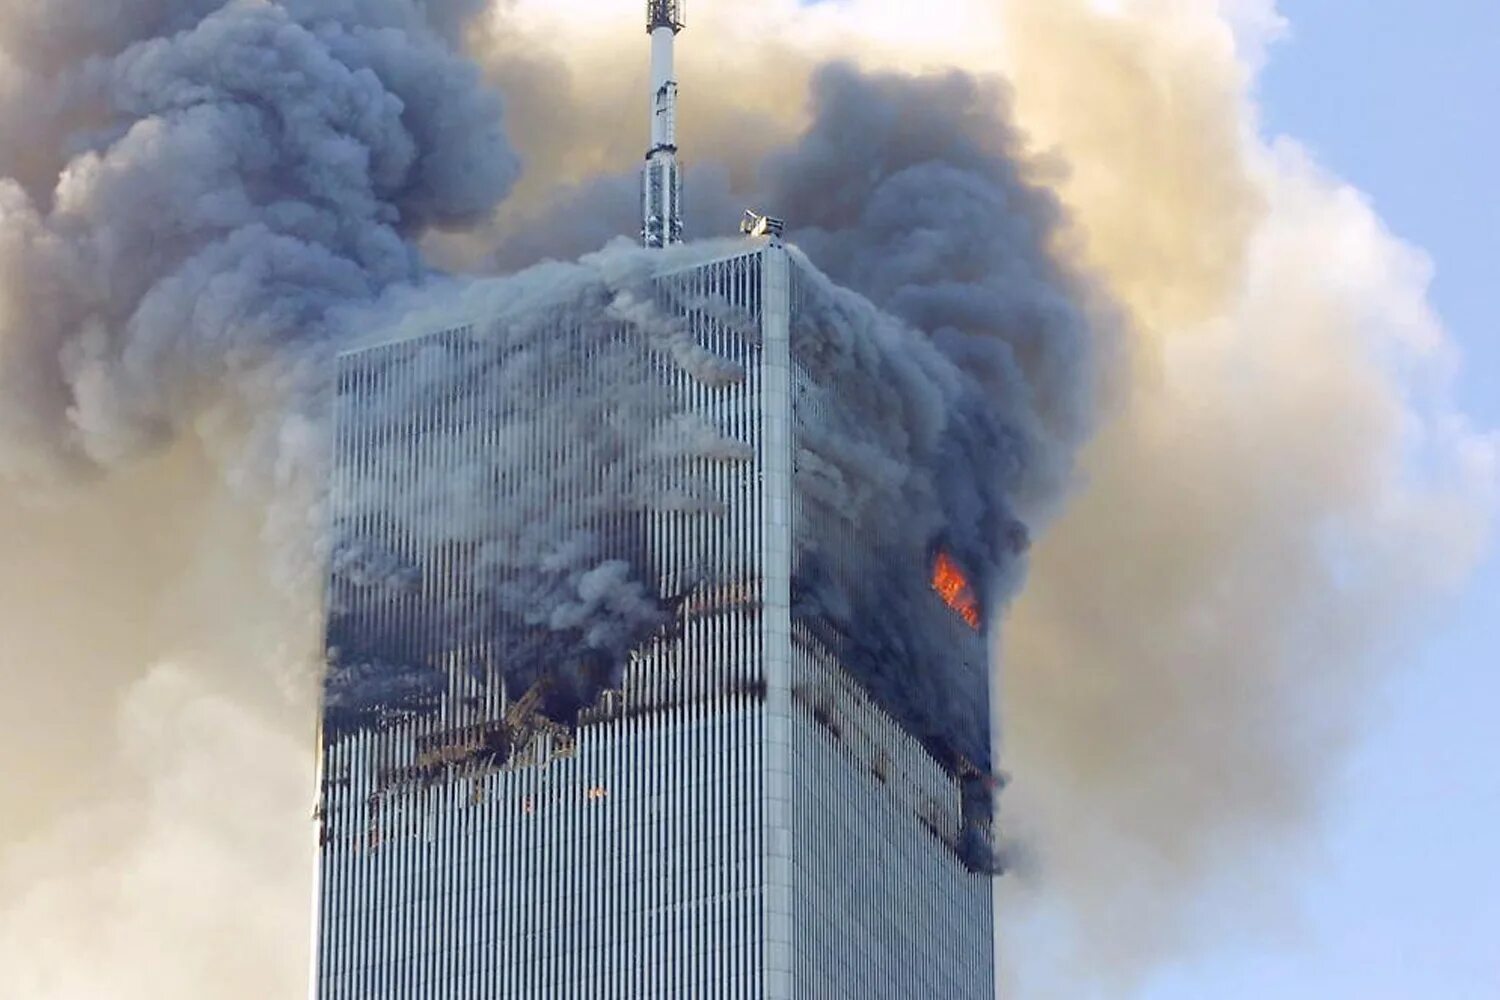 Небоскребы 2001. Башни Близнецы в Нью-Йорке 11 сентября. ВТЦ Нью-Йорк 2001. Башни ВТЦ 11 сентября 2001. Северная башня ВТЦ 11 сентября.